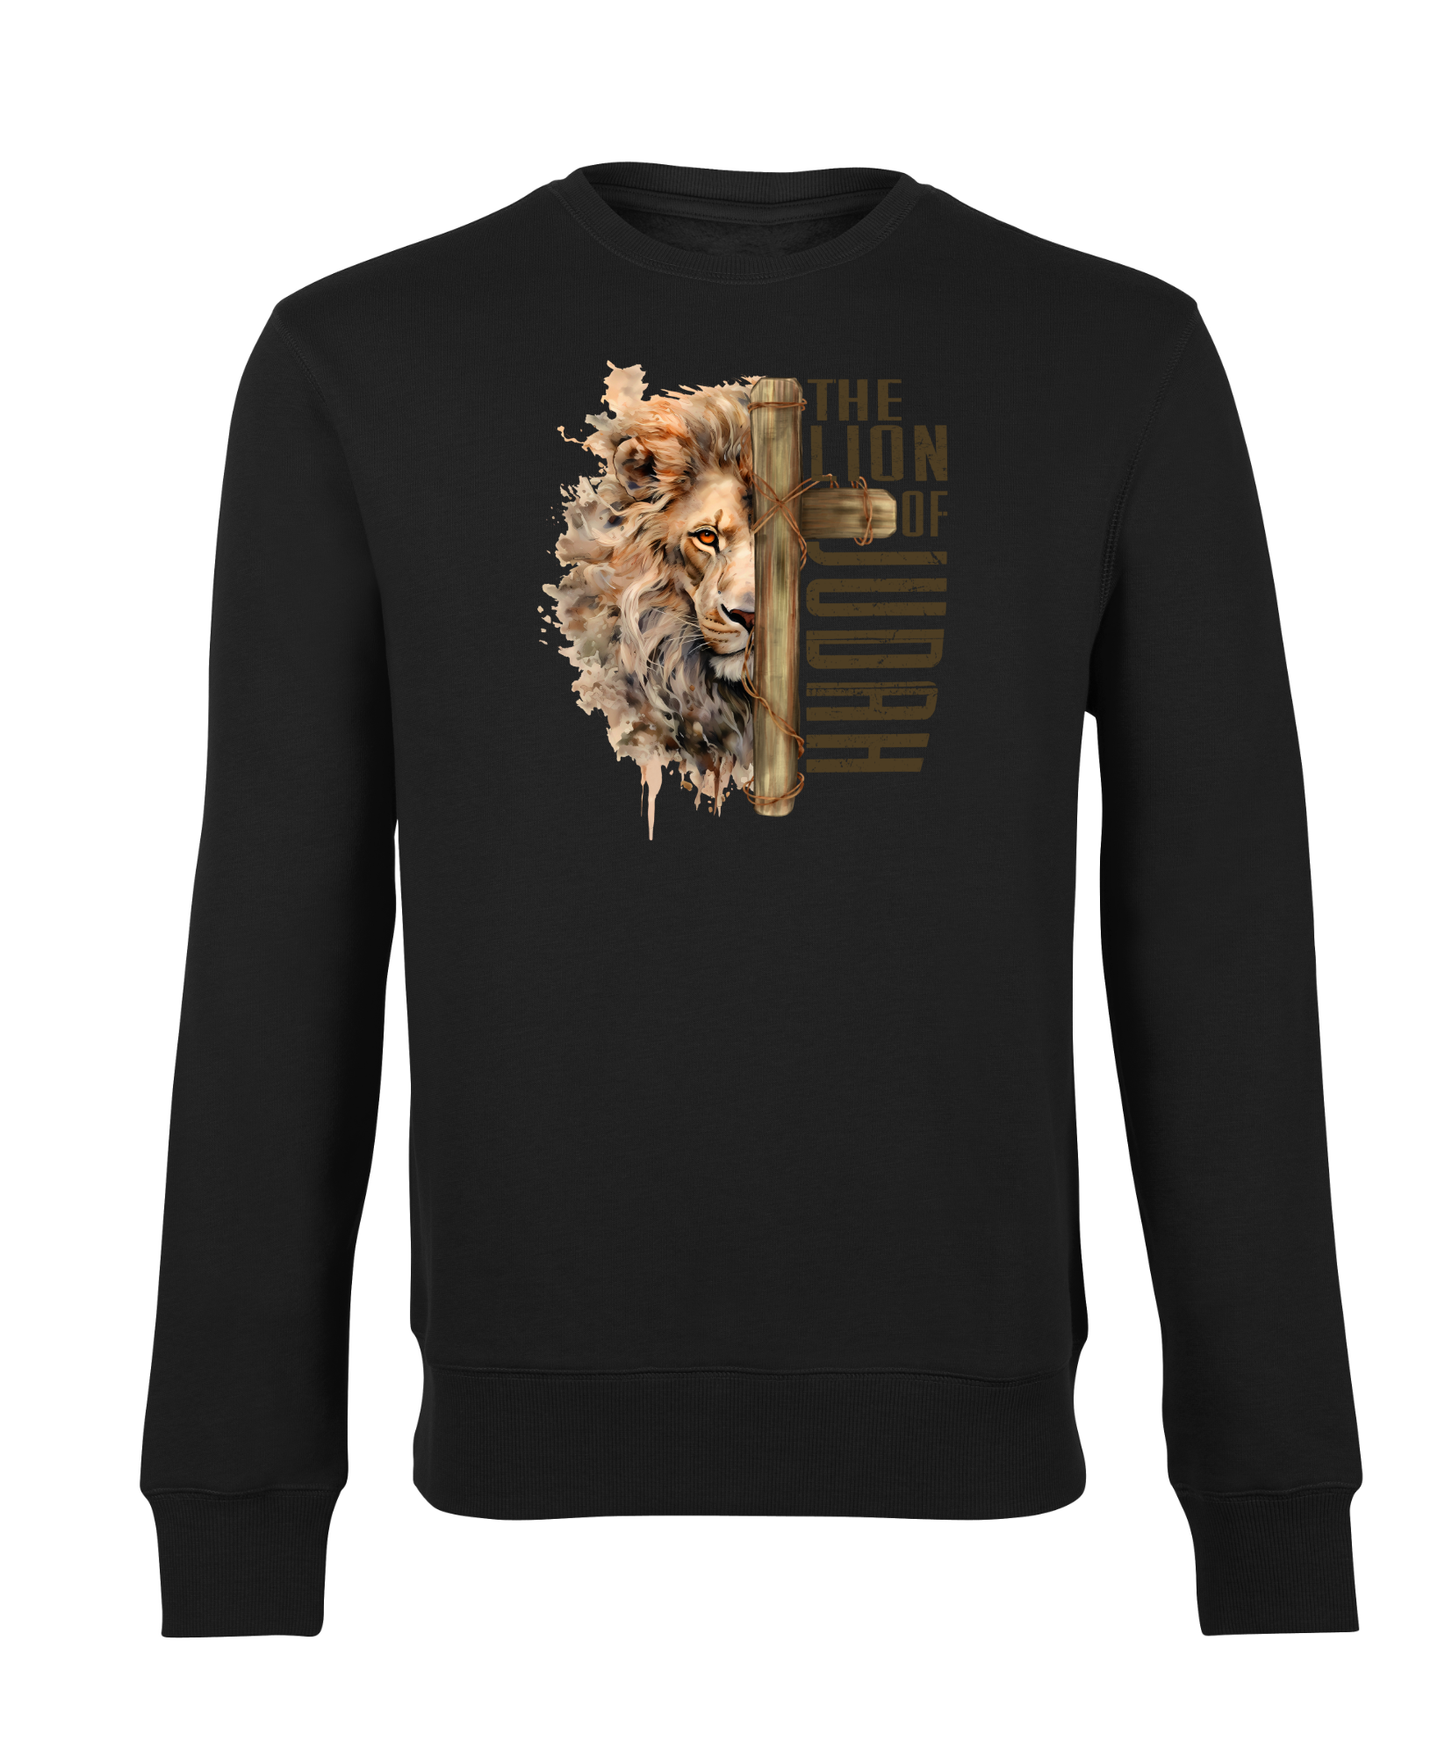 The Lion of Judah - Sweatshirts - großer Aufdruck